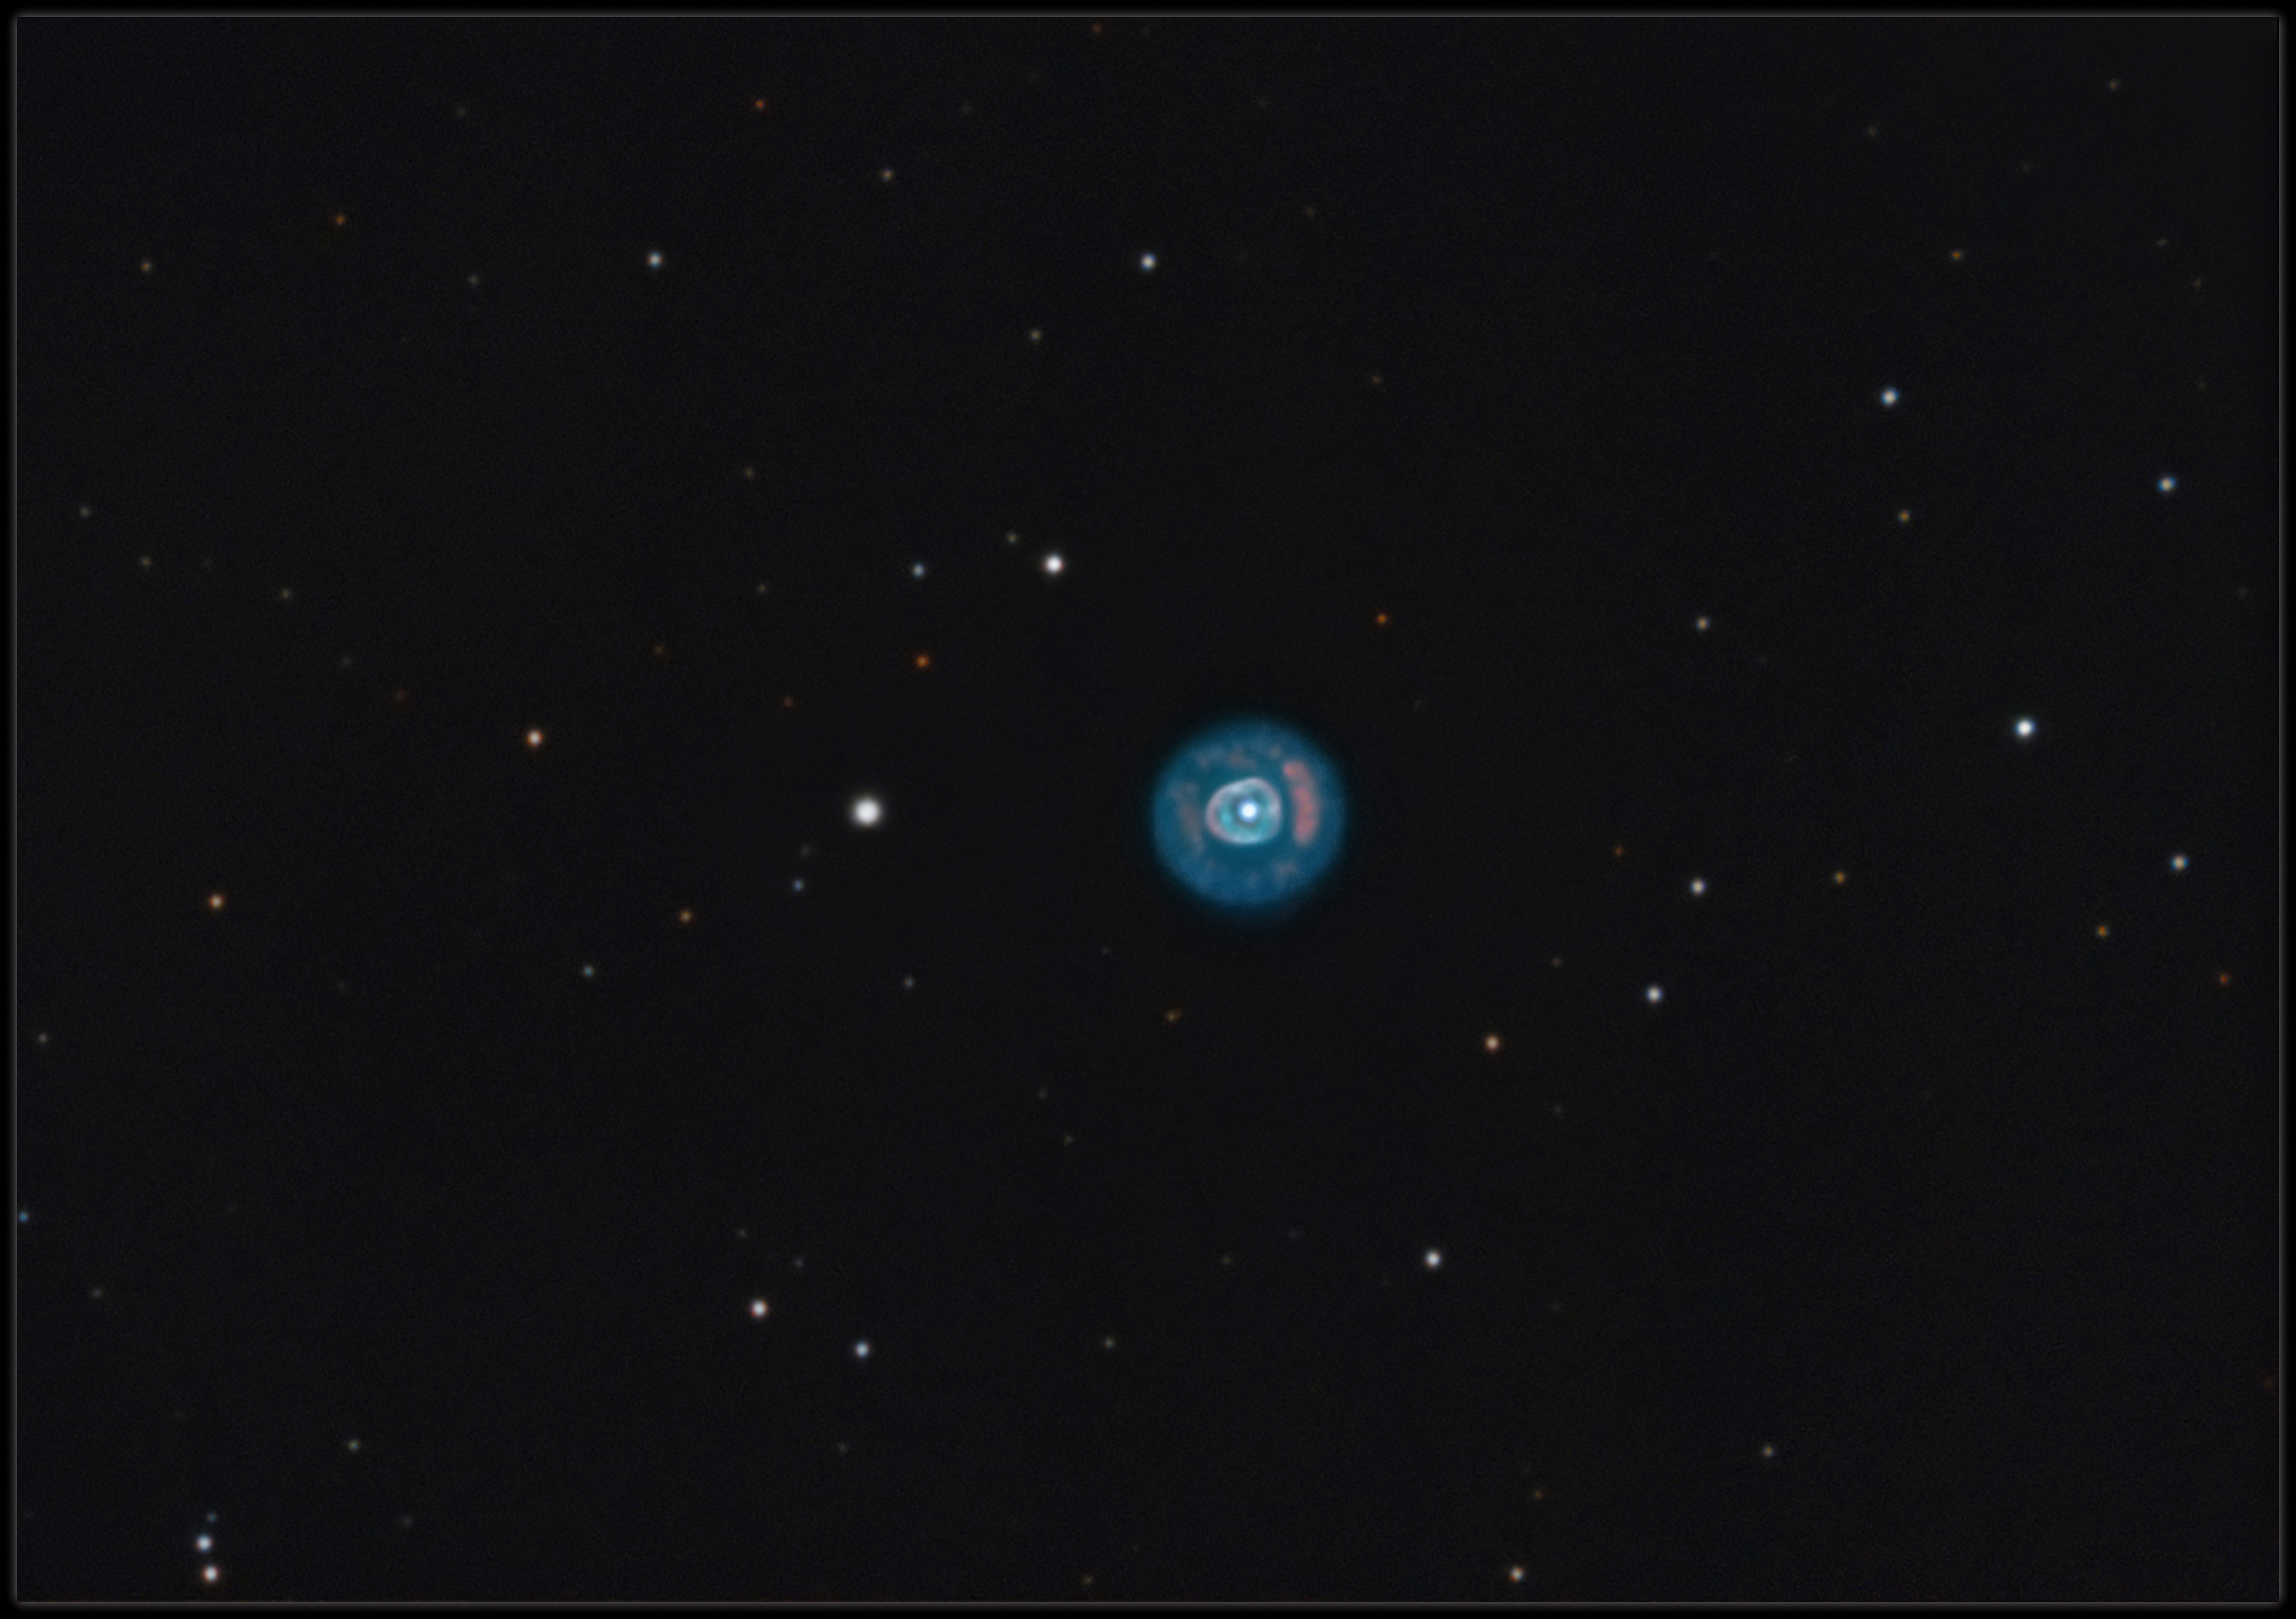 NGC 2392 